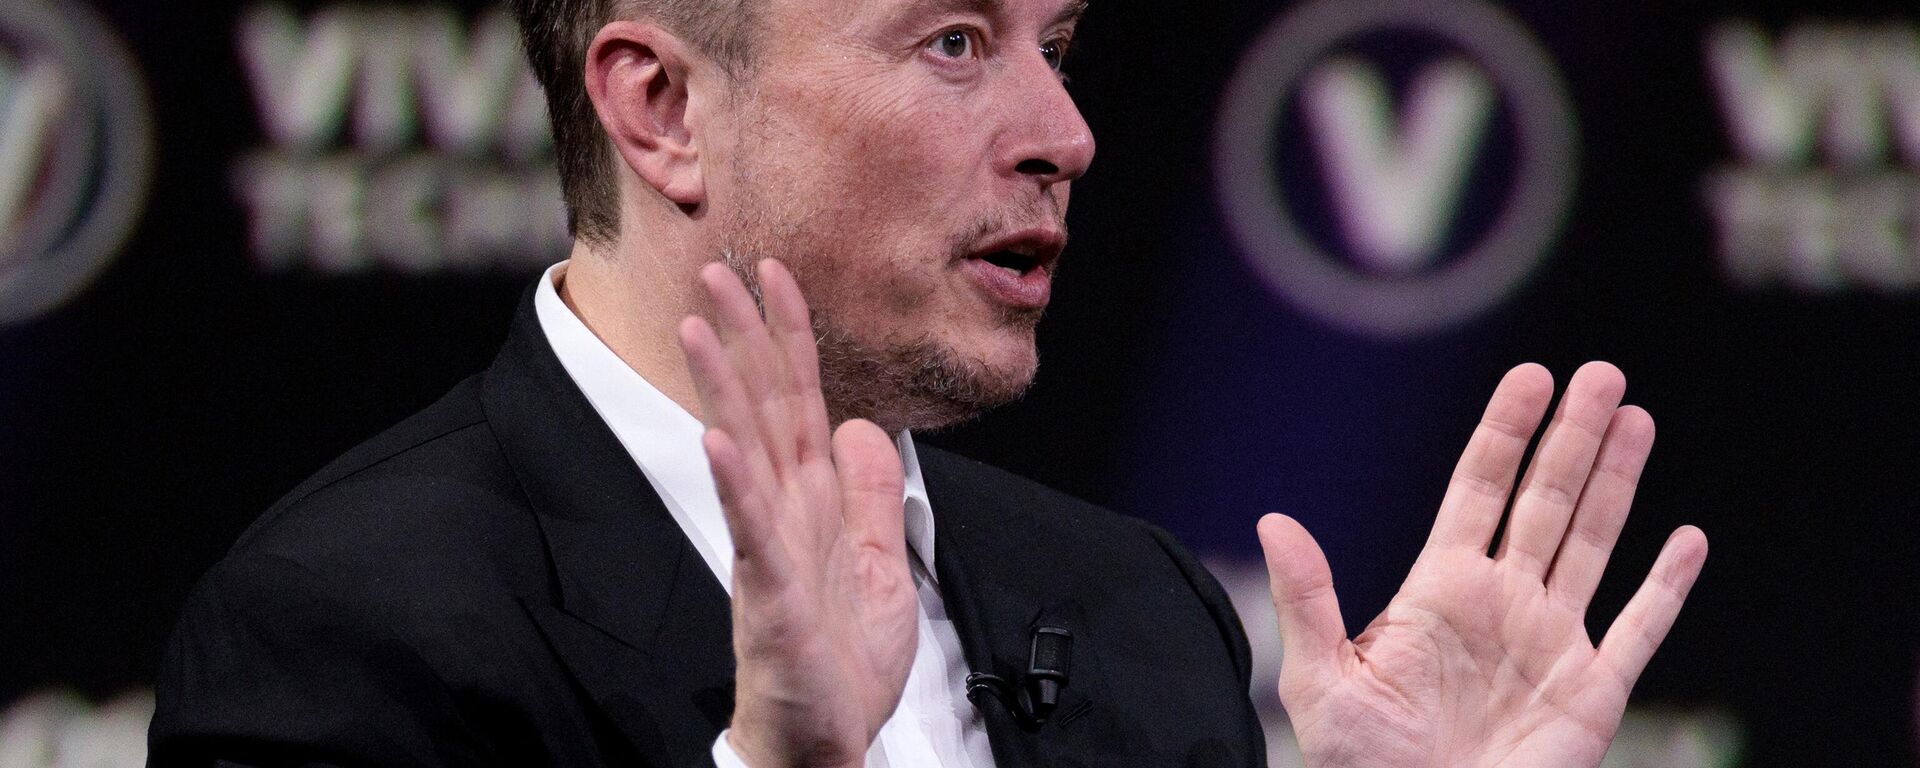 O CEO da SpaceX, Twitter e fabricante de carros elétricos Tesla, Elon Musk, fala durante um evento na feira de inovações e startups de tecnologia Vivatech no centro de exposições Porte de Versailles em Paris, em 16 de junho de 2023 - Sputnik Brasil, 1920, 01.07.2023